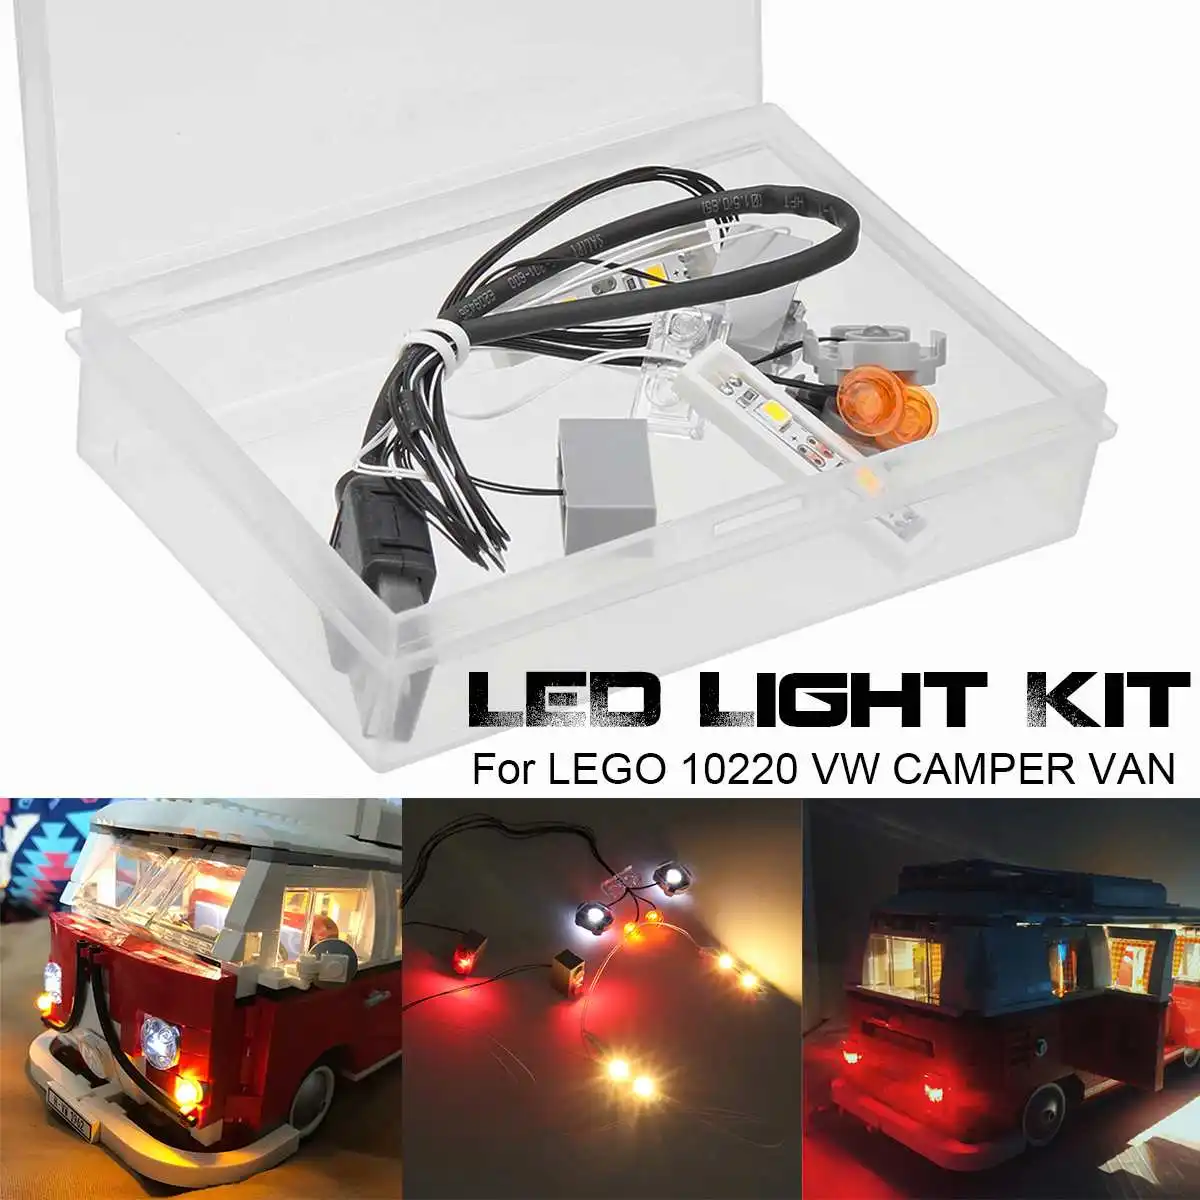 Светодиодный комплект для лего 10220 для VW для CAMPER VAN (без модели автомобиля в комплекте), питание от USB светодиодный модель с освещением